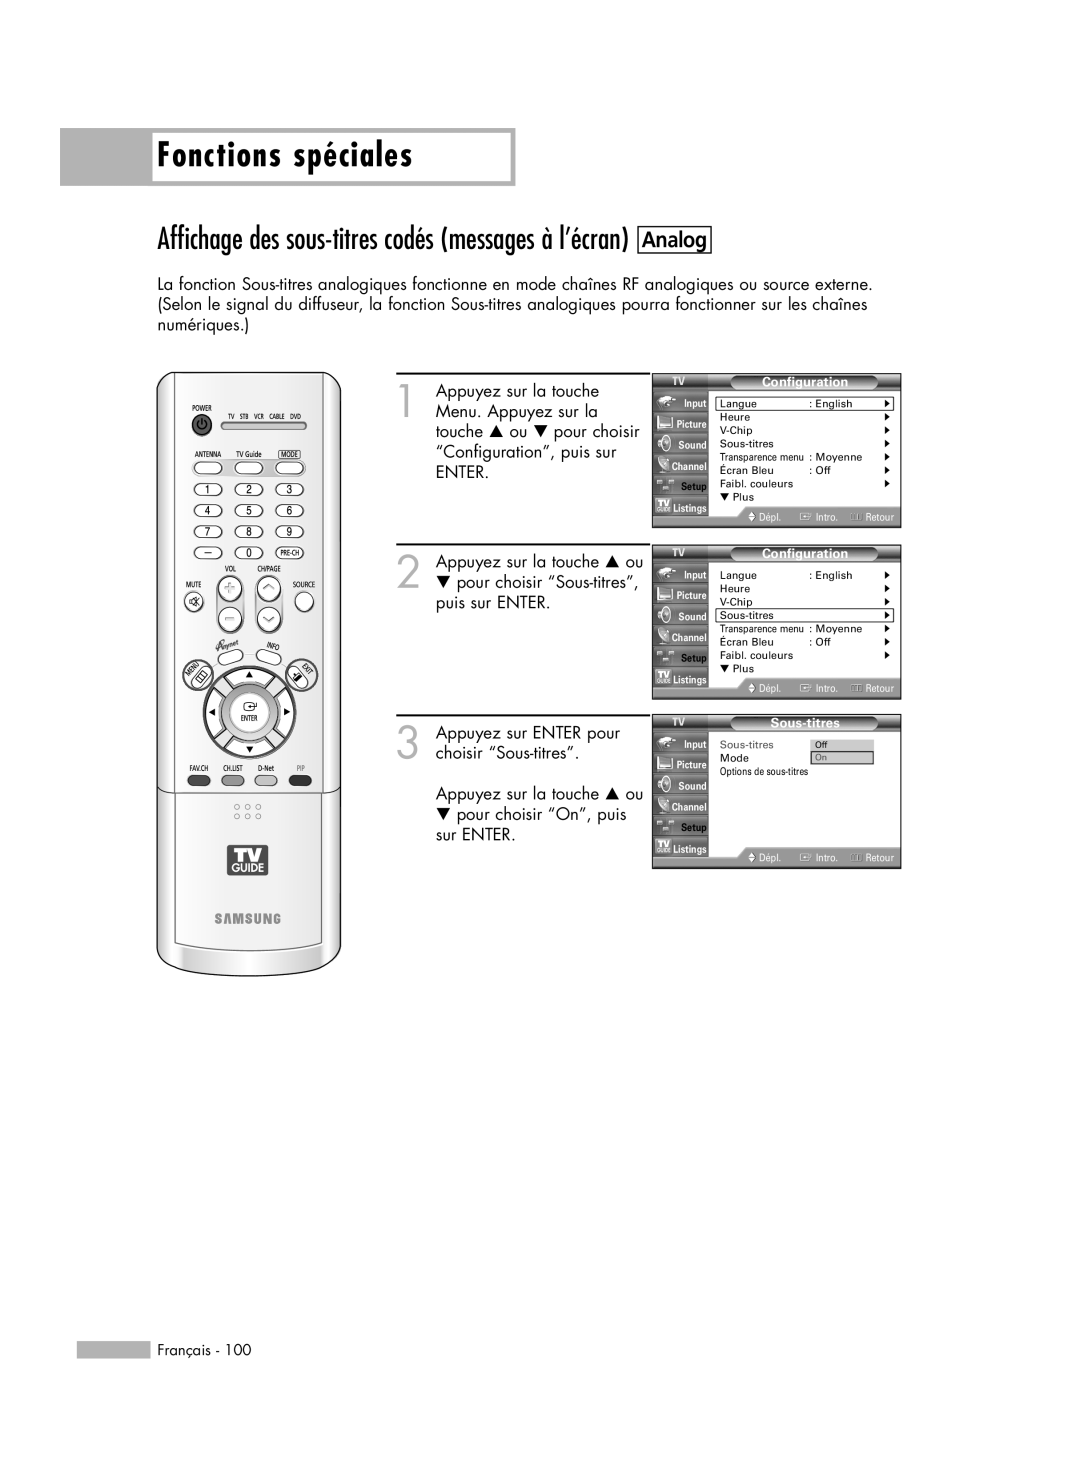 Samsung HL-R6178W, HL-R5078W Affichage des sous-titres codés messages à l’écran, Fonctions spéciales, Analog, Sous-titres 